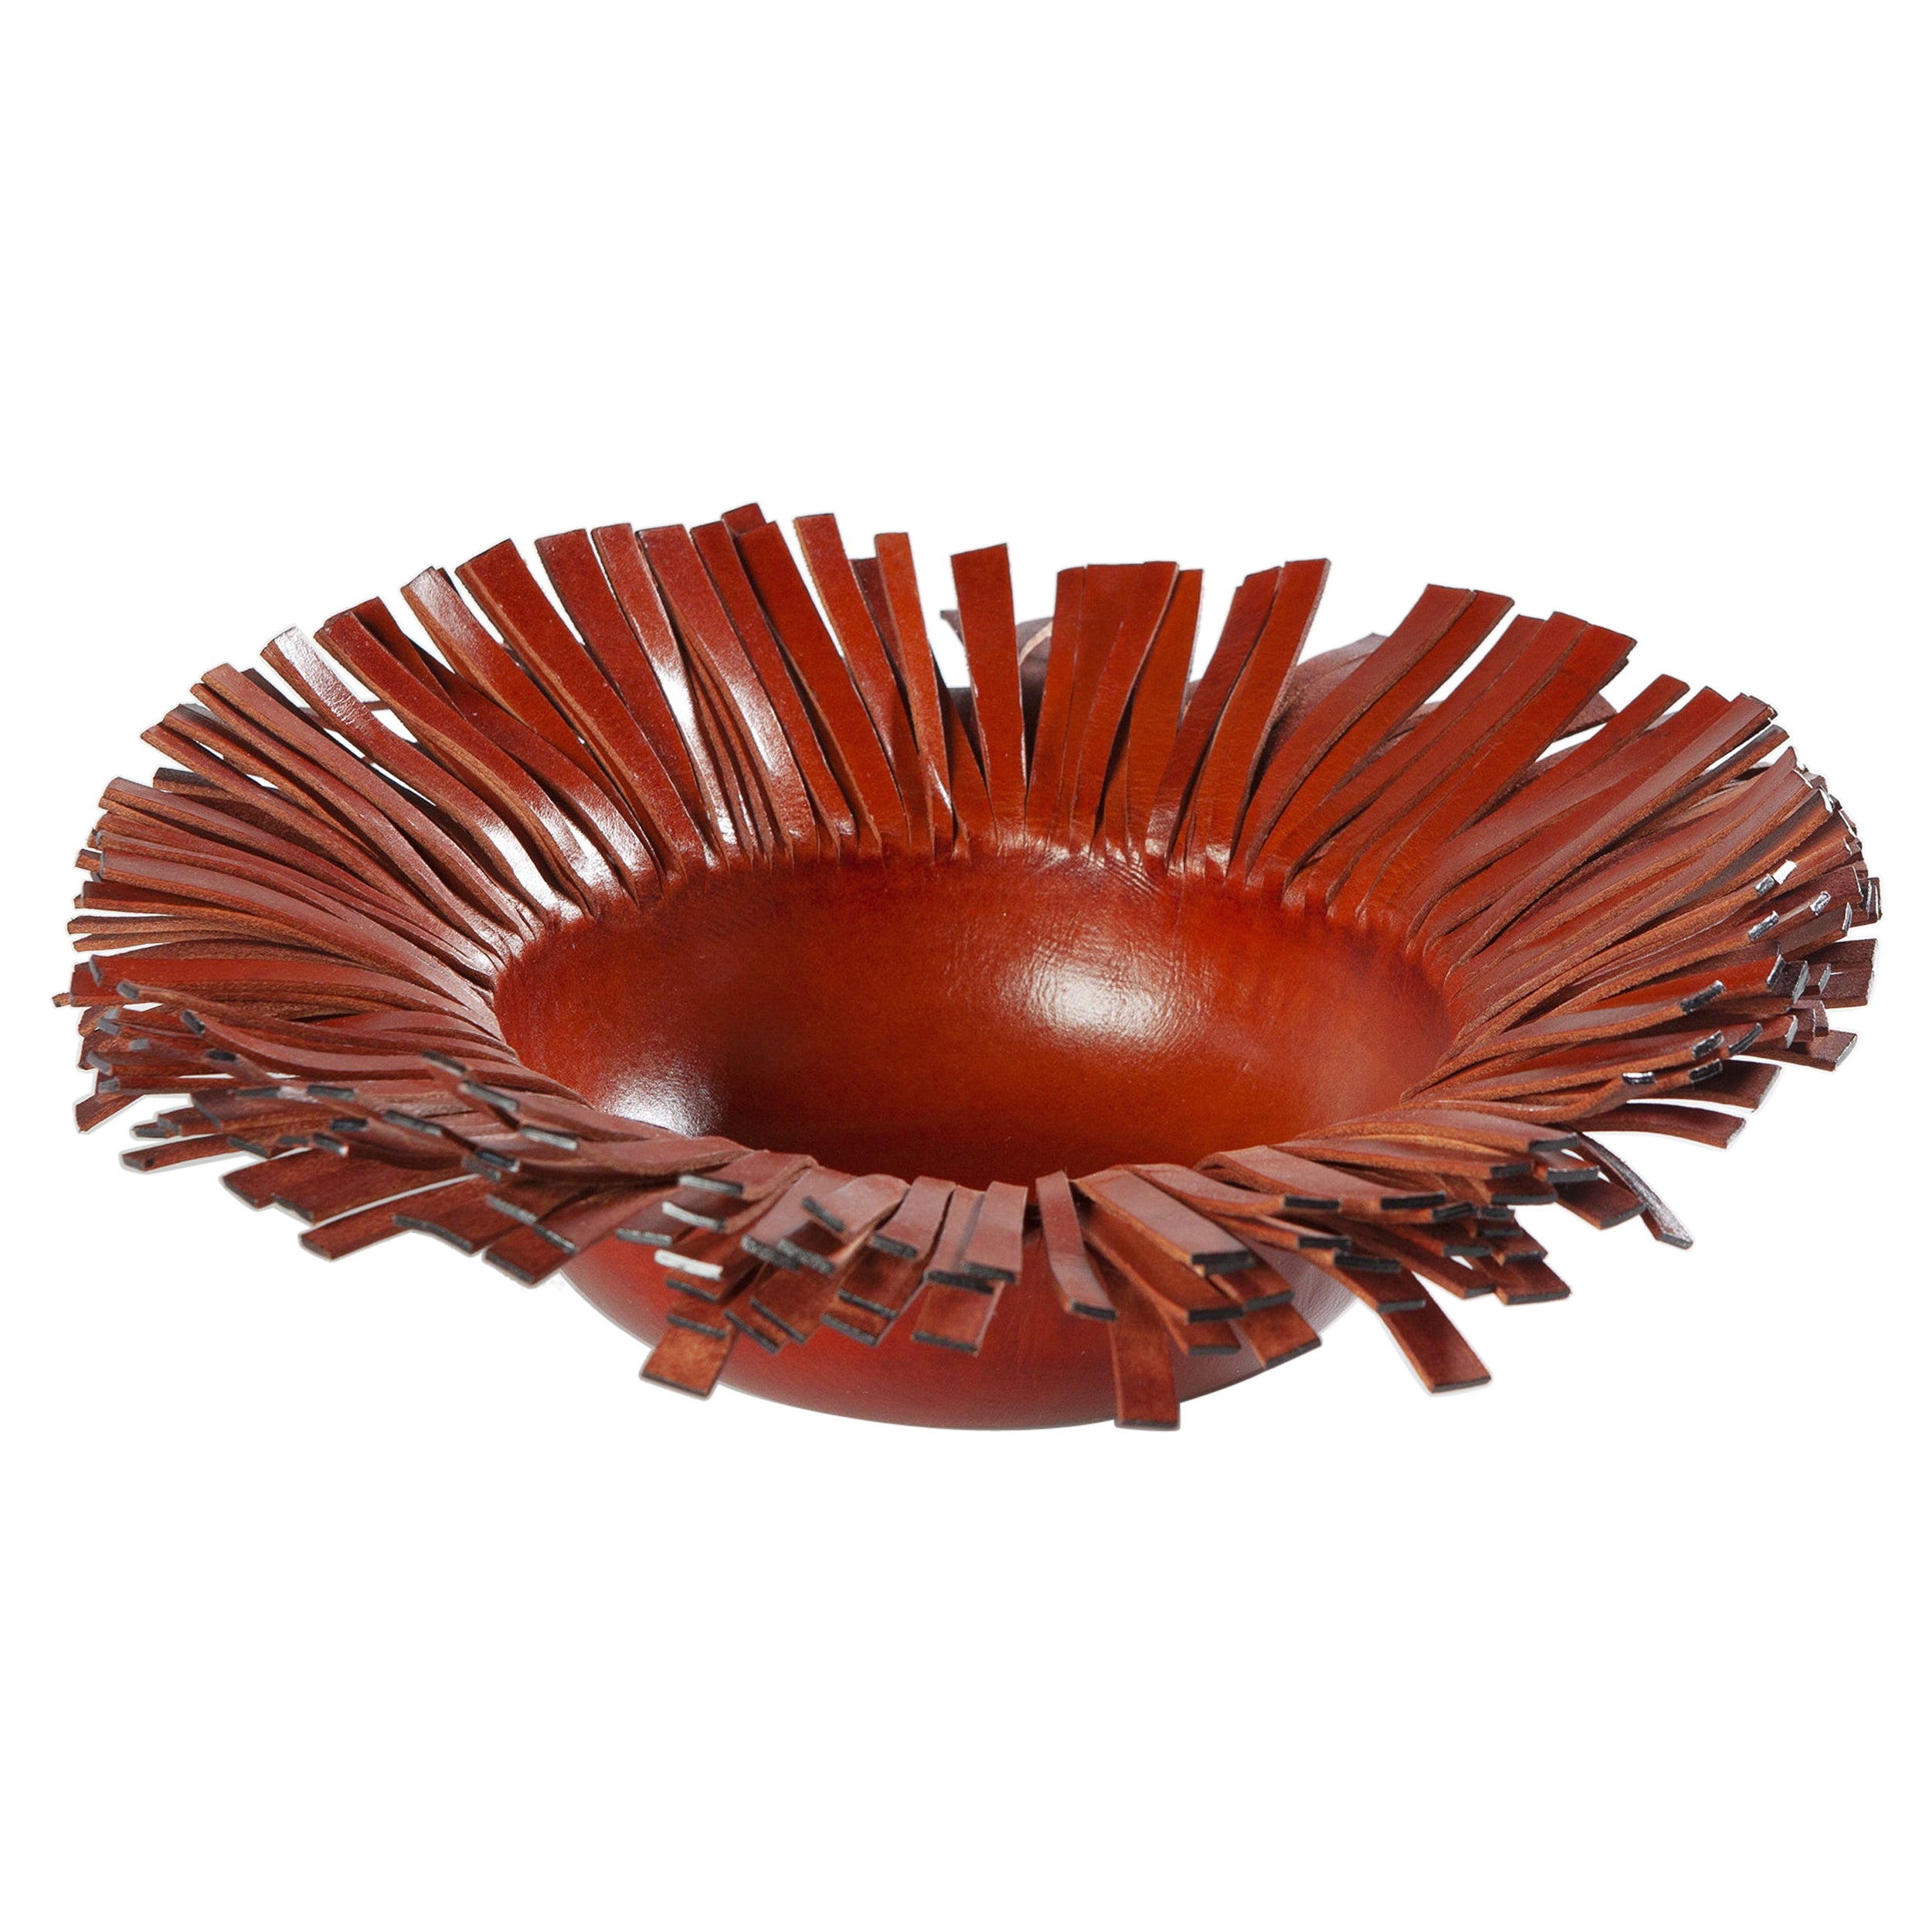 Fringed Handmade Luxury Leather Bowl Centerpiece